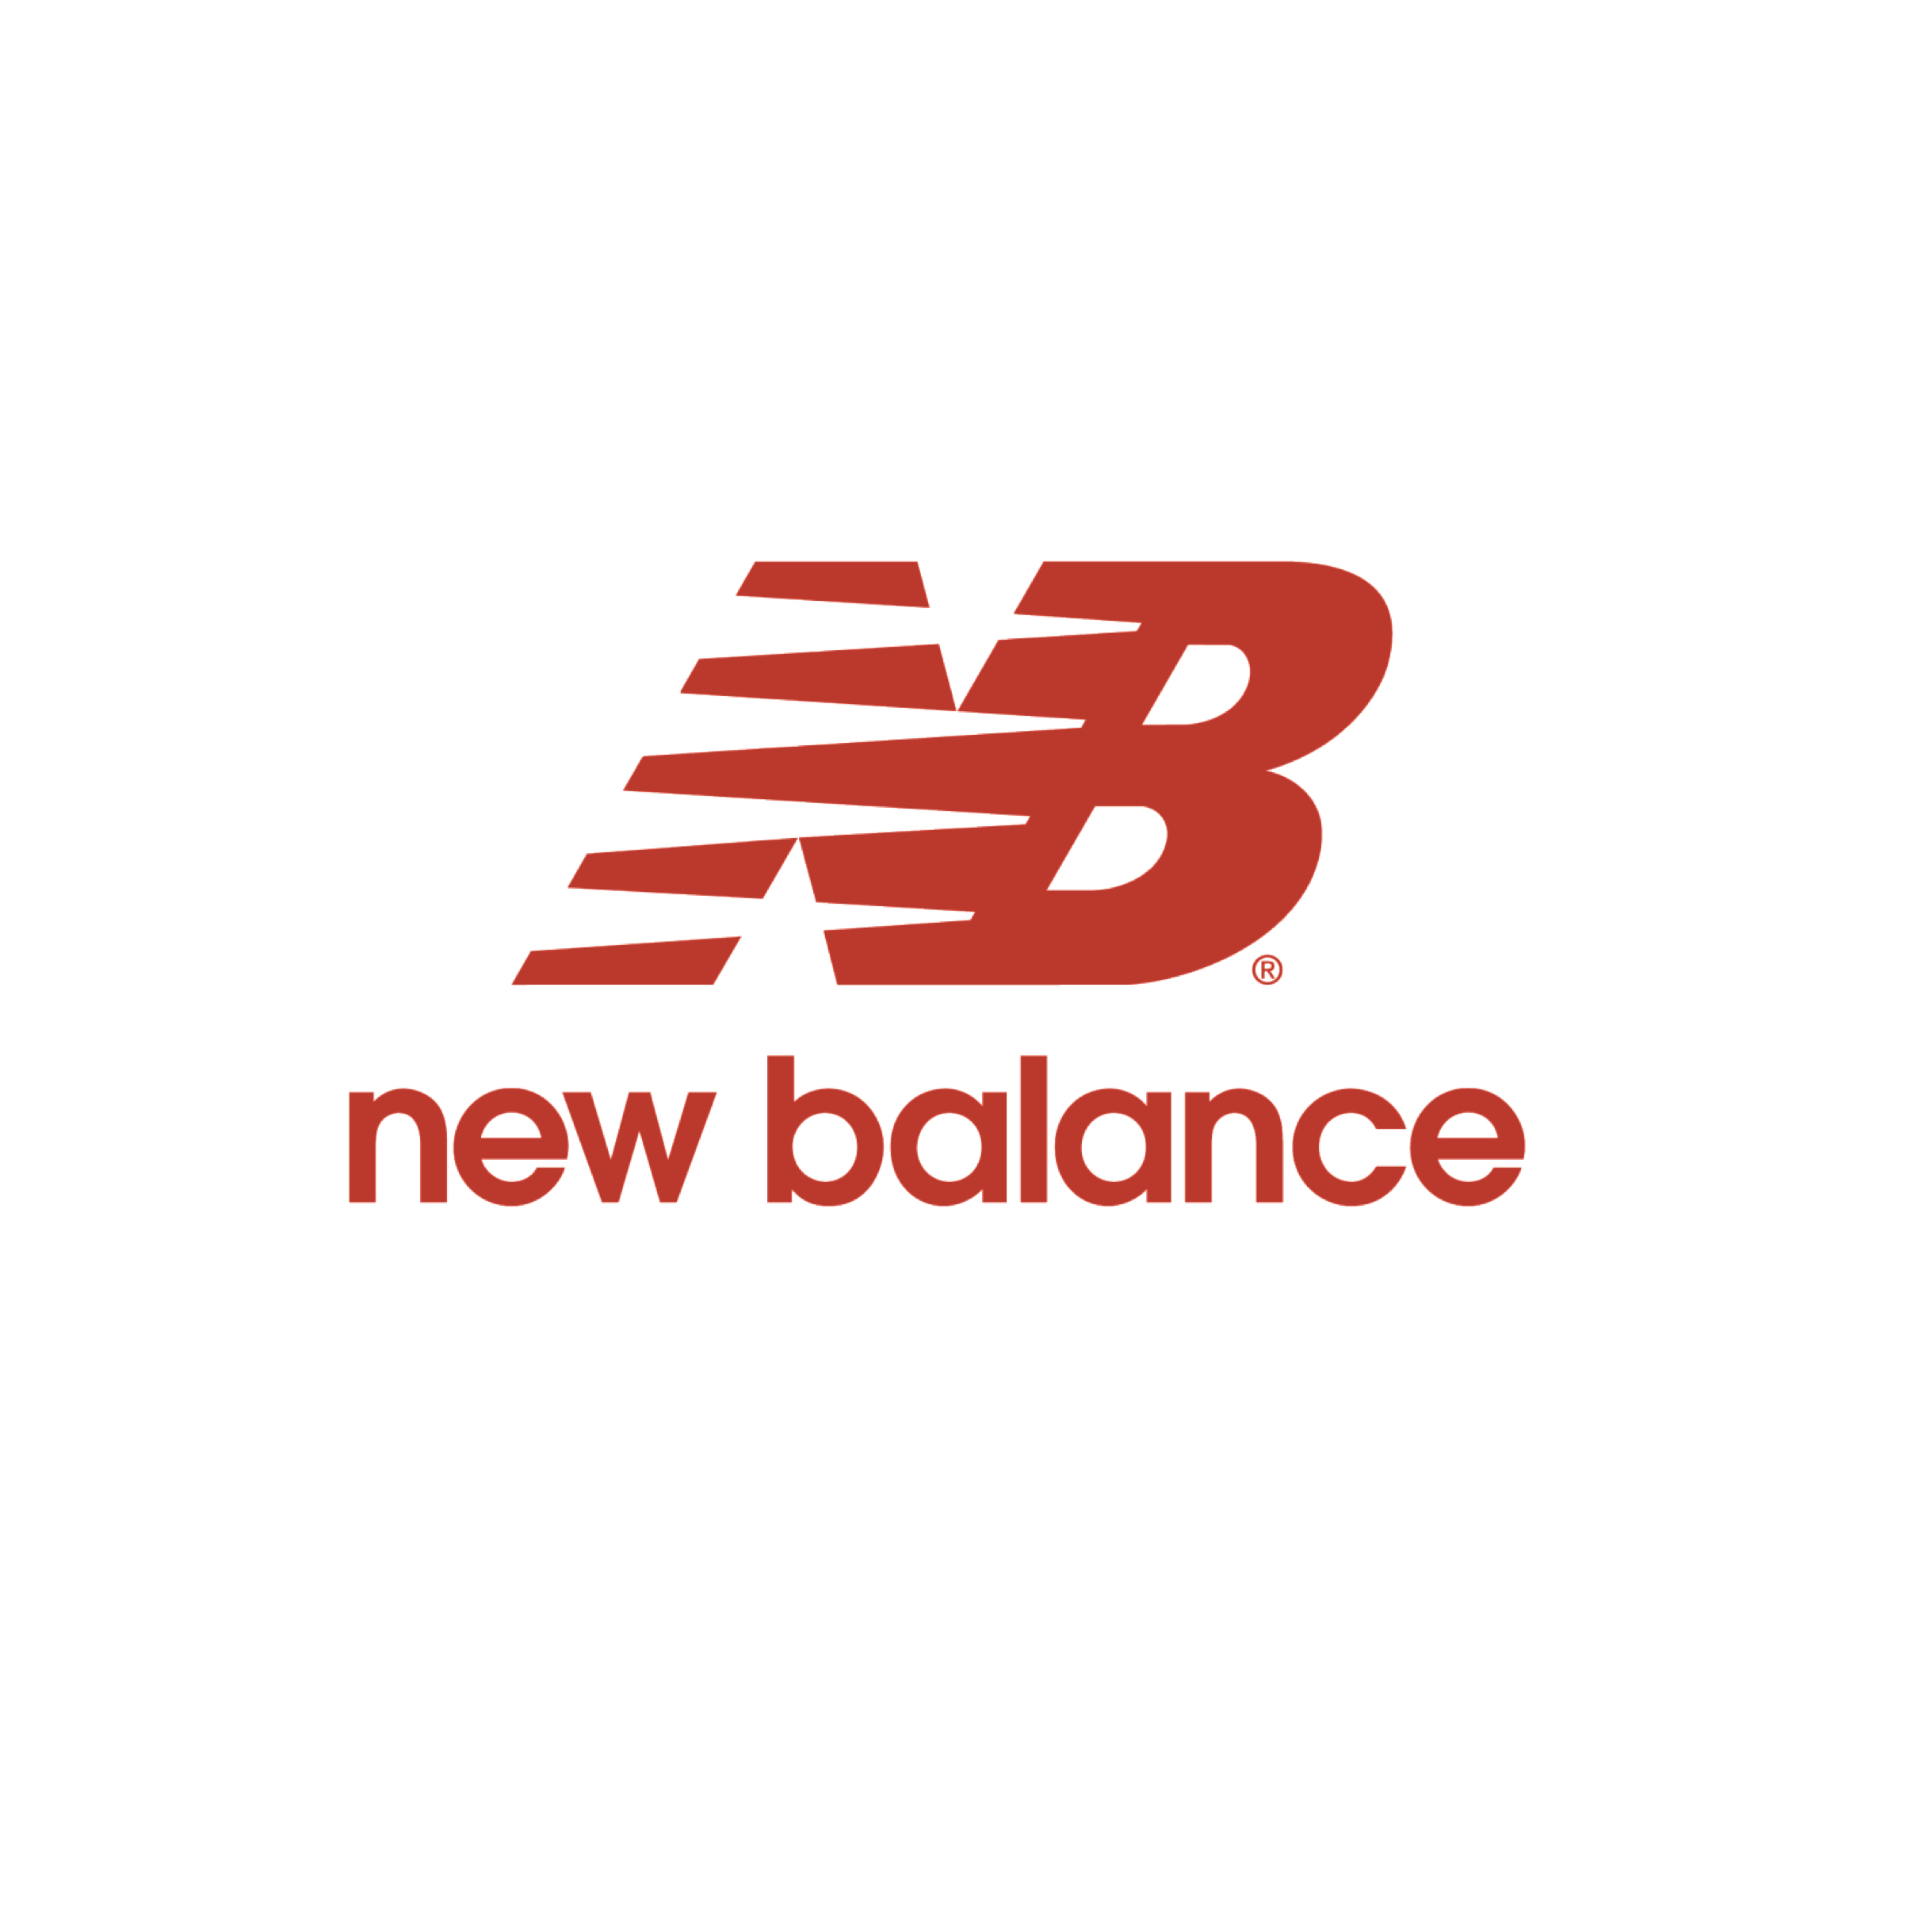 NewBalance_web_prepped_logo.jpg